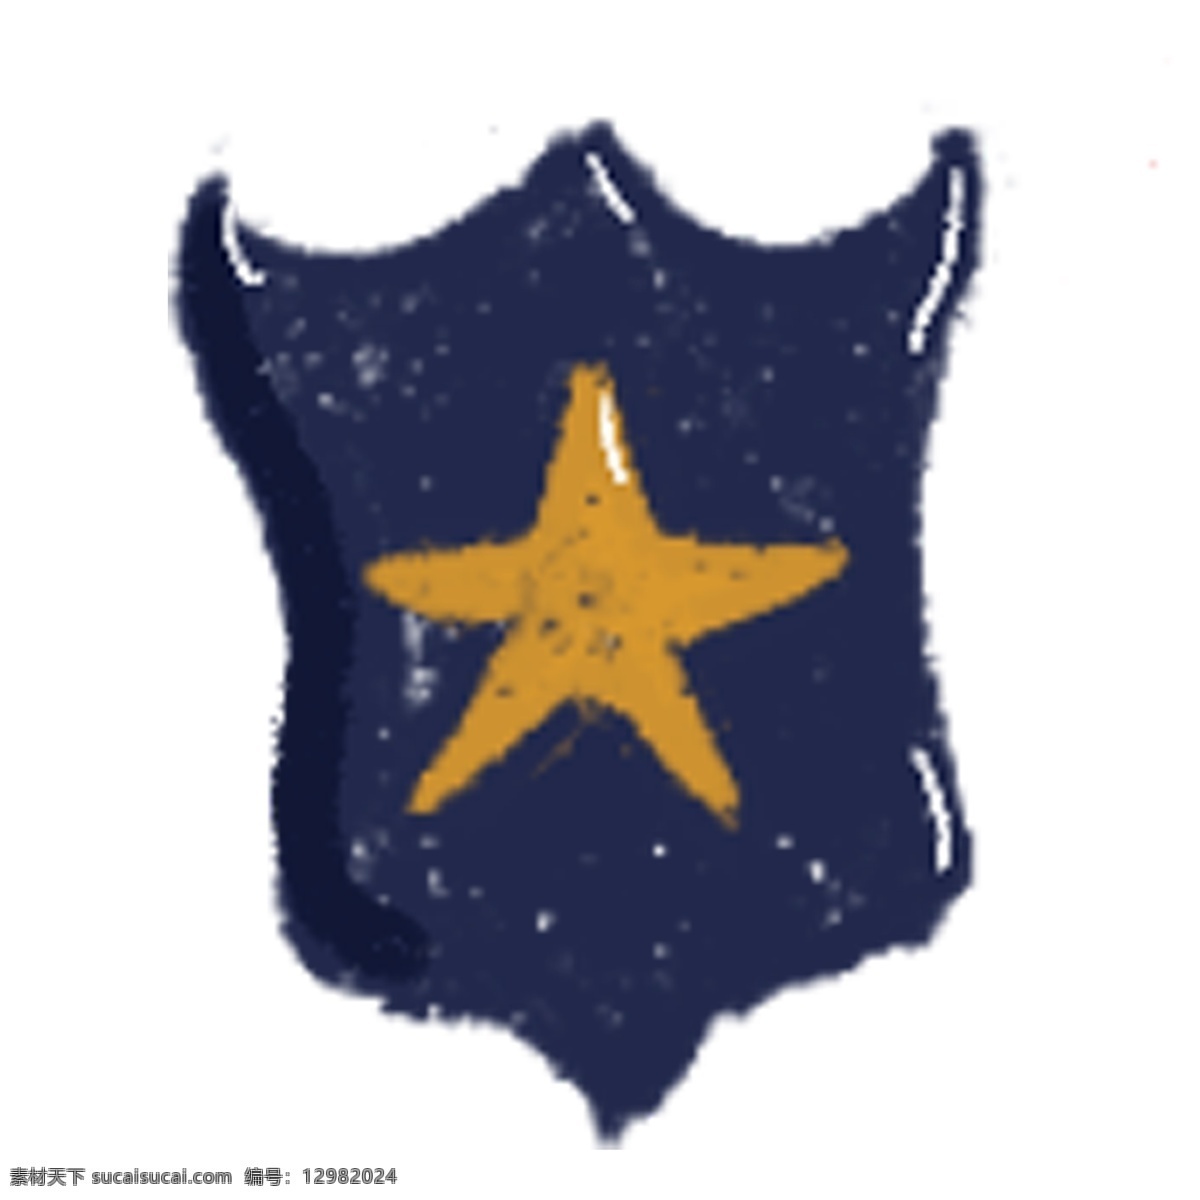 五角星 警徽 袖标 图标 星星 警察用品 警务用品 部队用品 警察专用